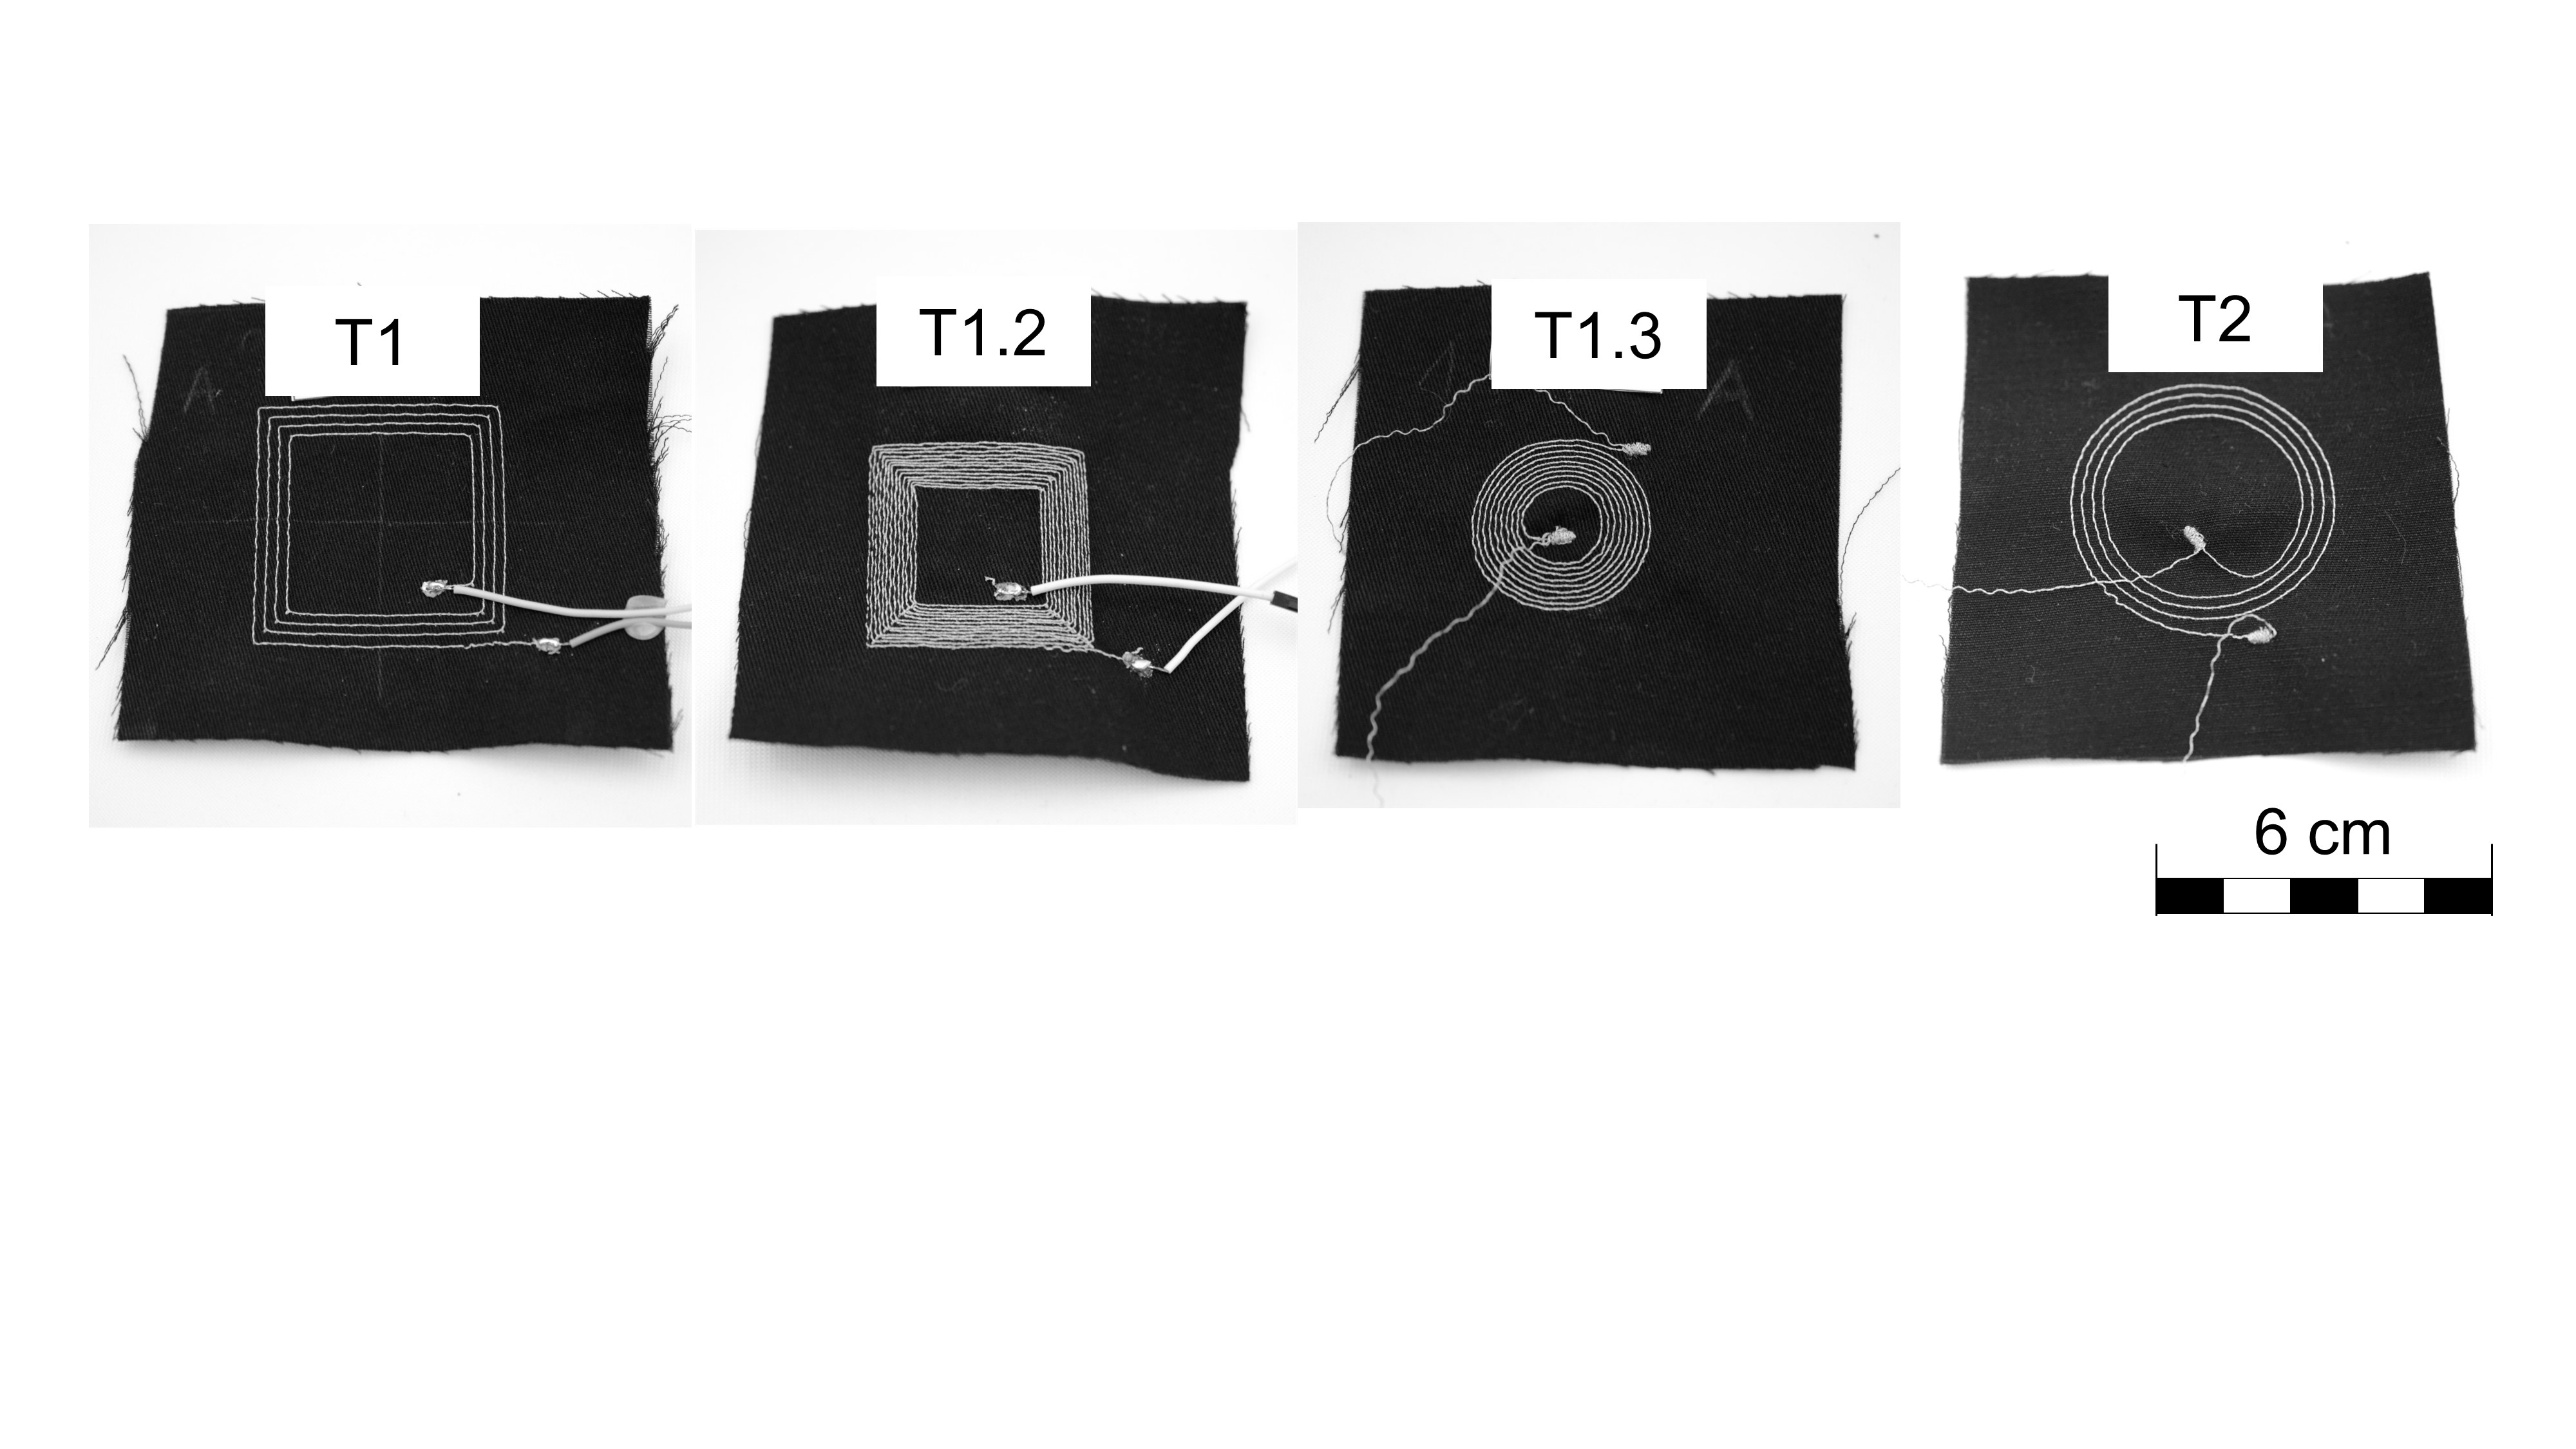 Projekt 3: T1 - Sensors: 2. Verdrahtung der Schaltung und Aufbau